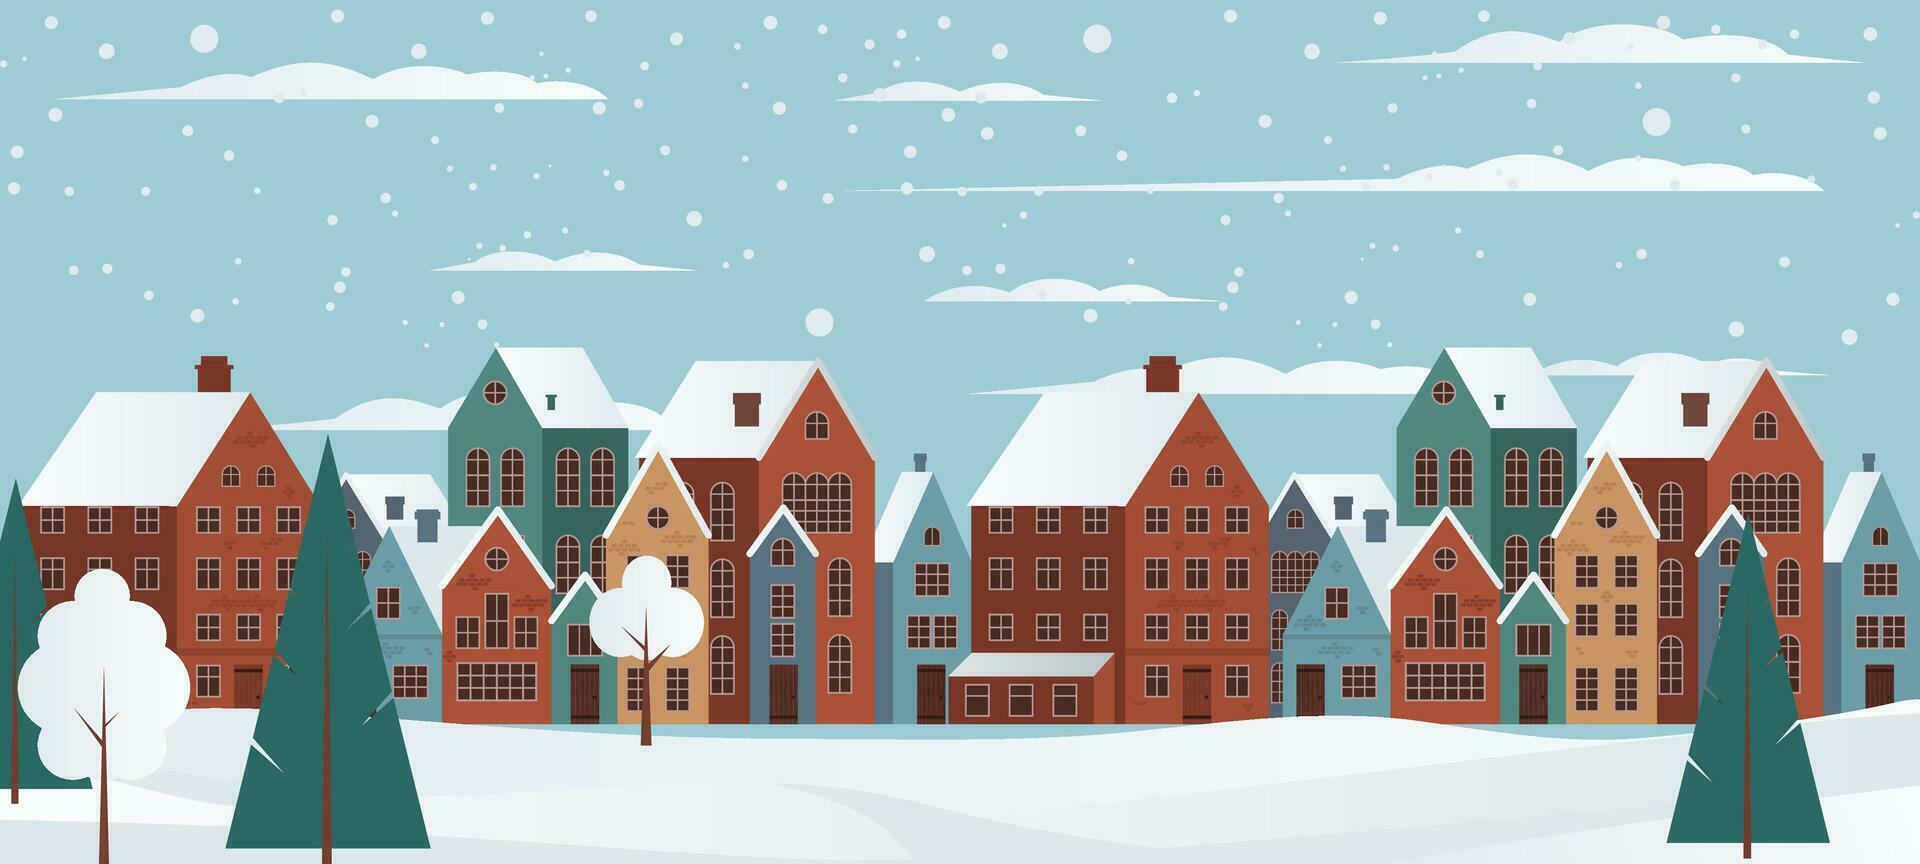 knus charmant winter panorama van een klein stad- met huizen, bomen, en sneeuw. vector illustratie voor Kerstmis kaarten en hartelijk groeten. winter magie met haar besneeuwd landschap. niet ai gegenereerd.